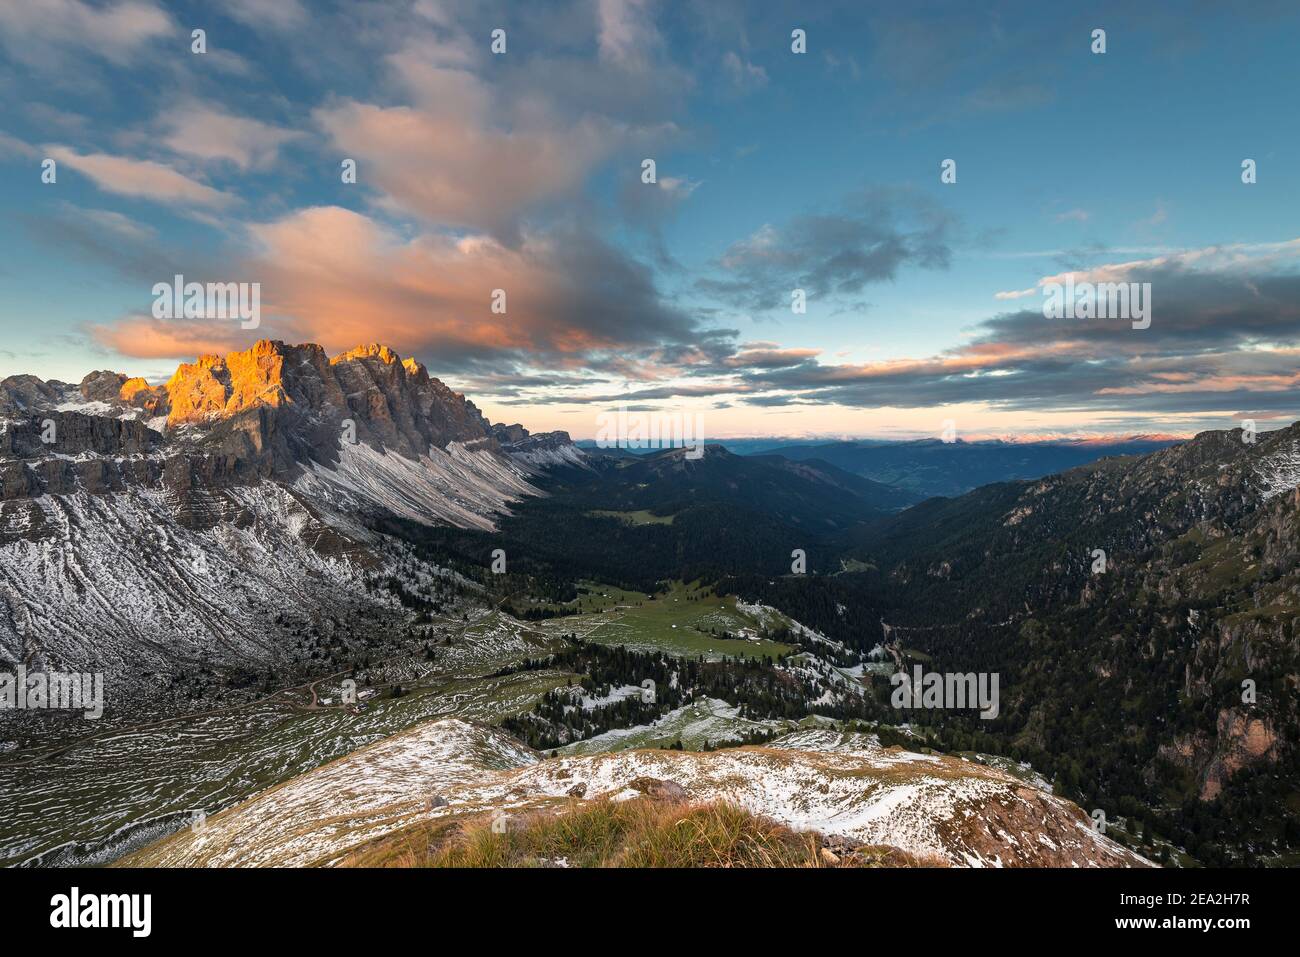 Les nuages, les falaises et les sommets des montagnes Puez-Odle brillent d'or au soleil au lever du soleil sur les Dolomites, vallée de Villnöß, Sout Tyrol, Italie Banque D'Images